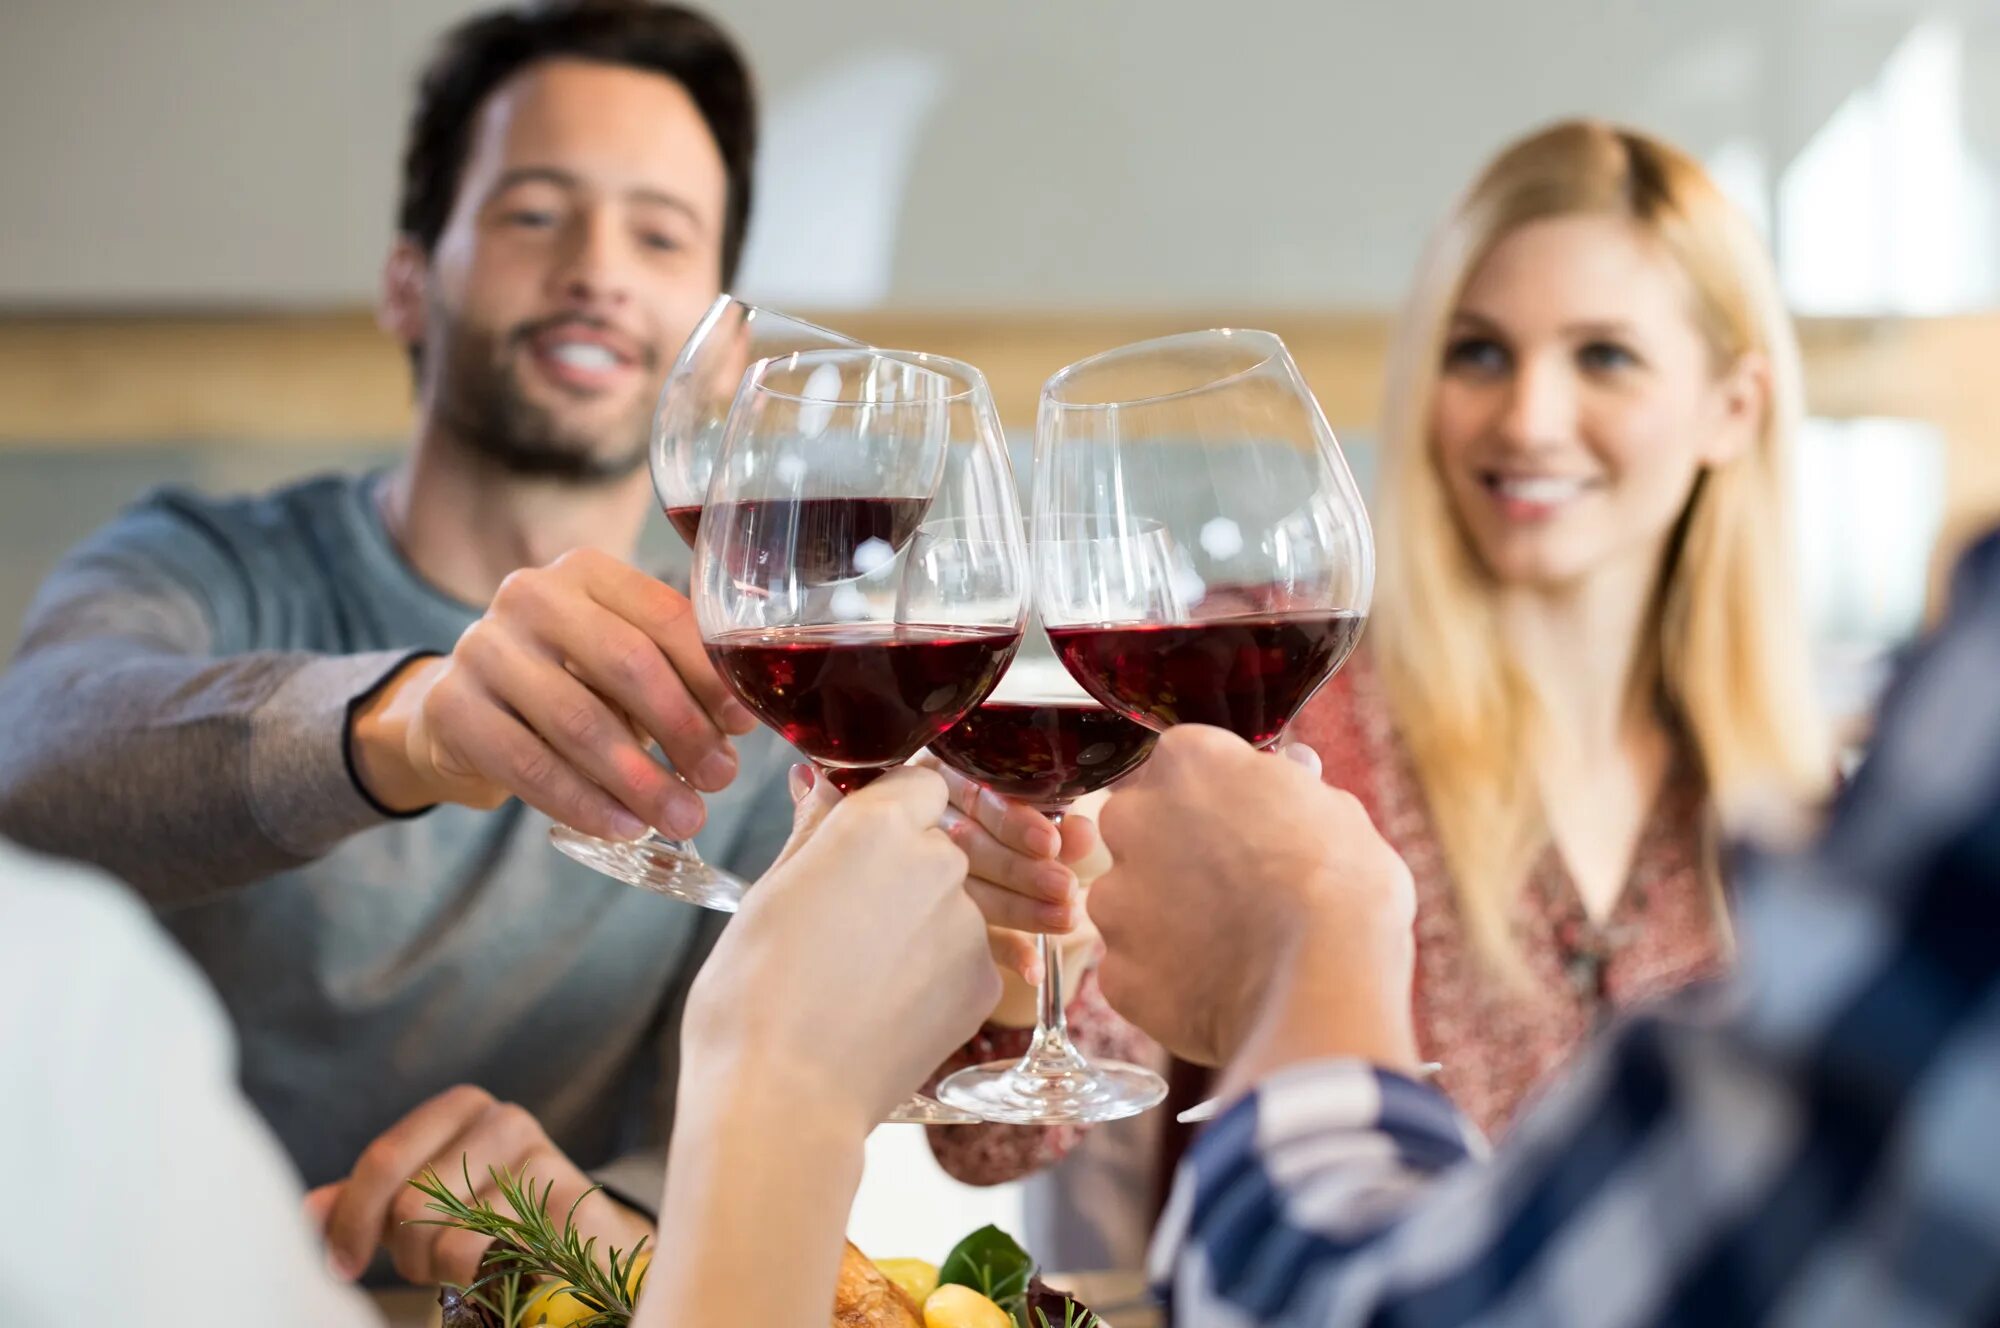 Выпить другими словами. Ресторан вино люди. Люди в ресторане. Люди в кафе с вином. Люди пьют вино в ресторане.